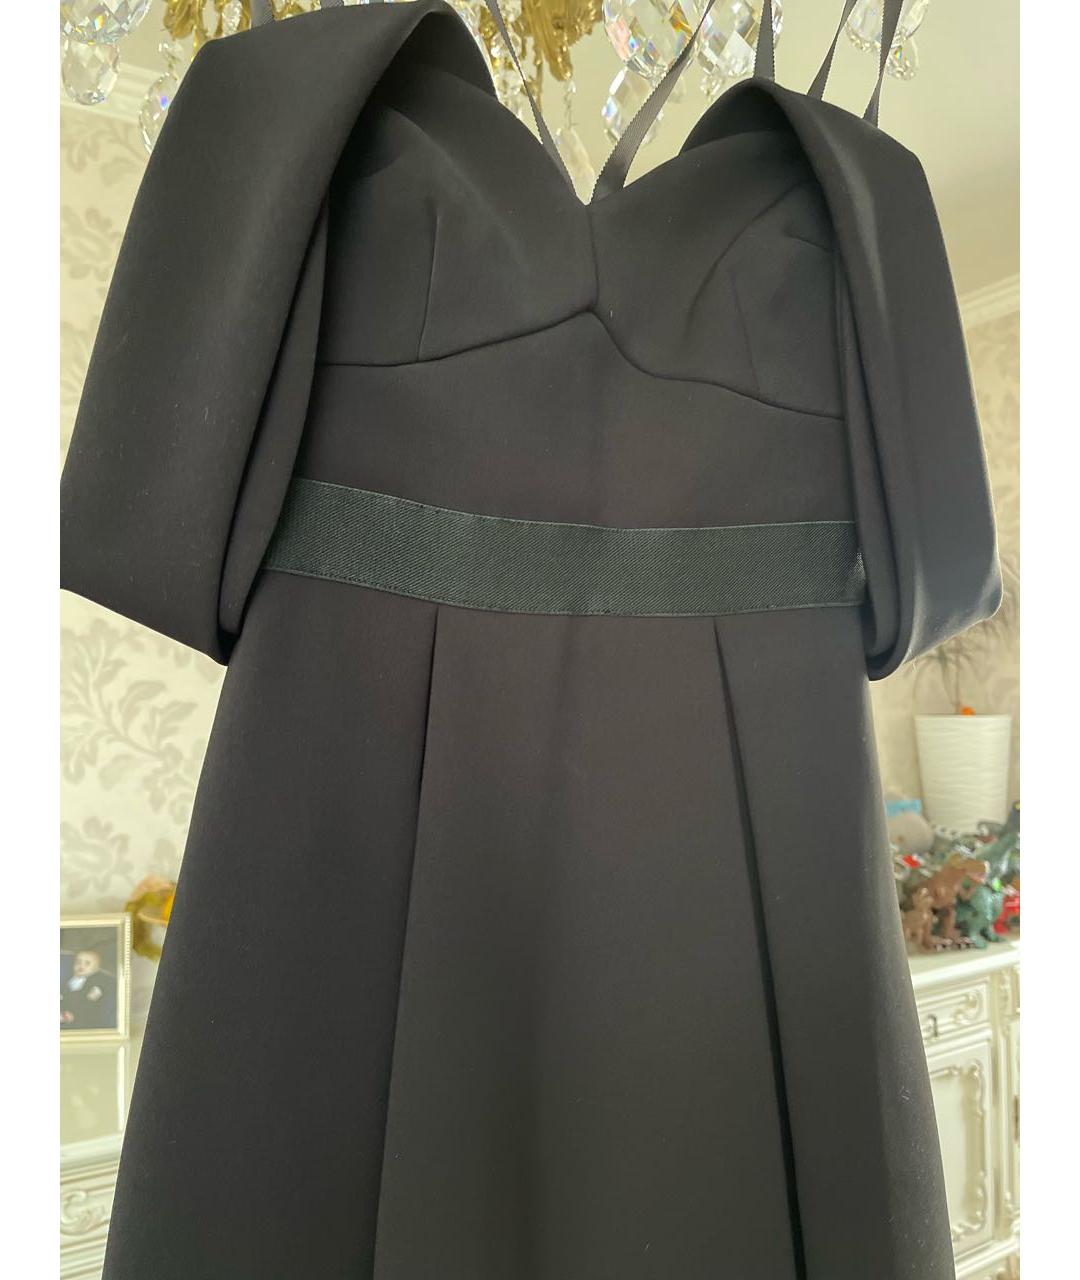 SELF-PORTRAIT Черное платье, фото 4